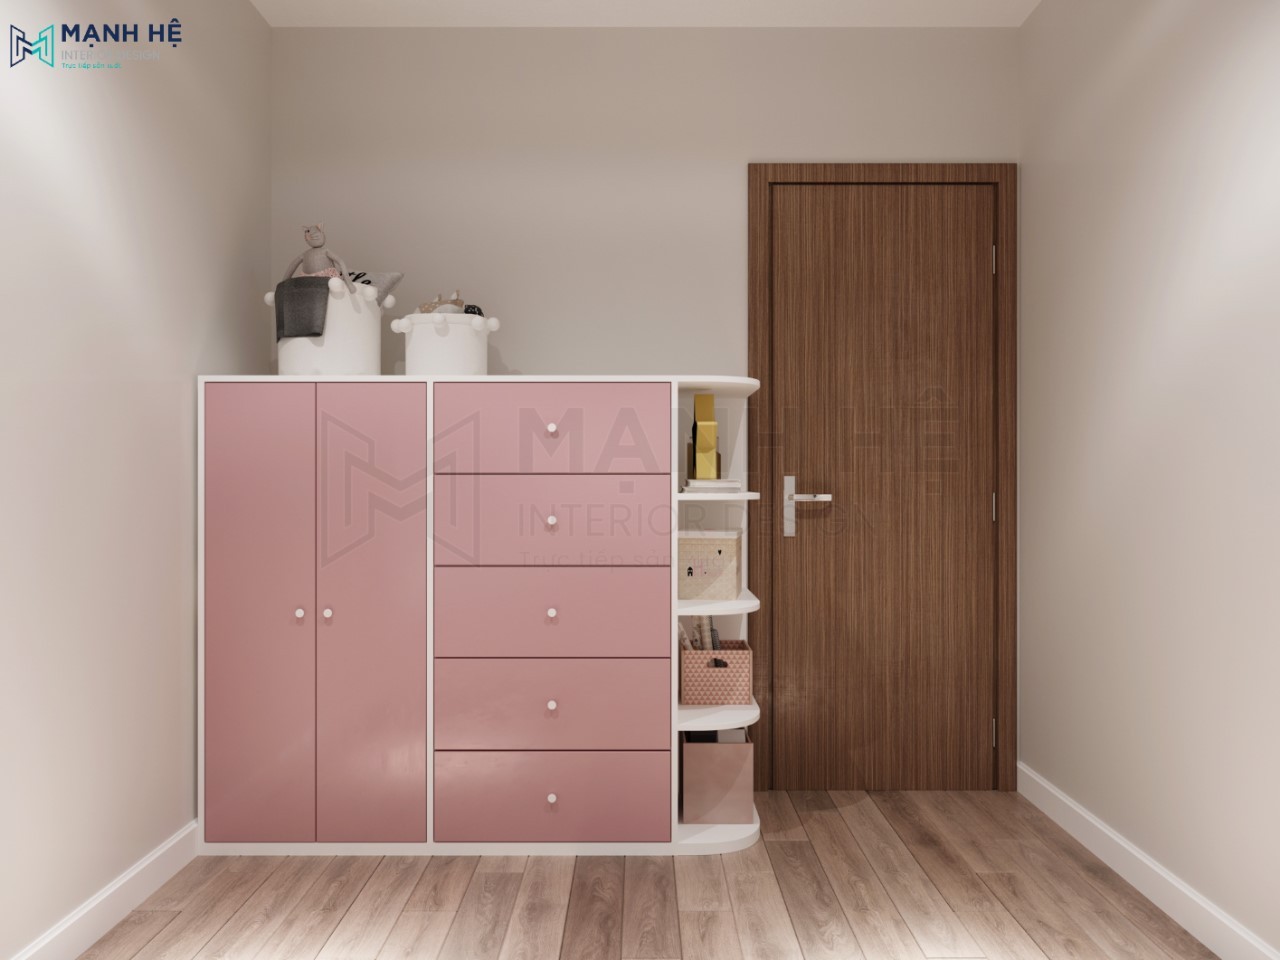 Thiết kế phòng ngủ nhỏ cho bé với tủ đựng đồ nhỏ gọn sơn màu hồng xinh xắn